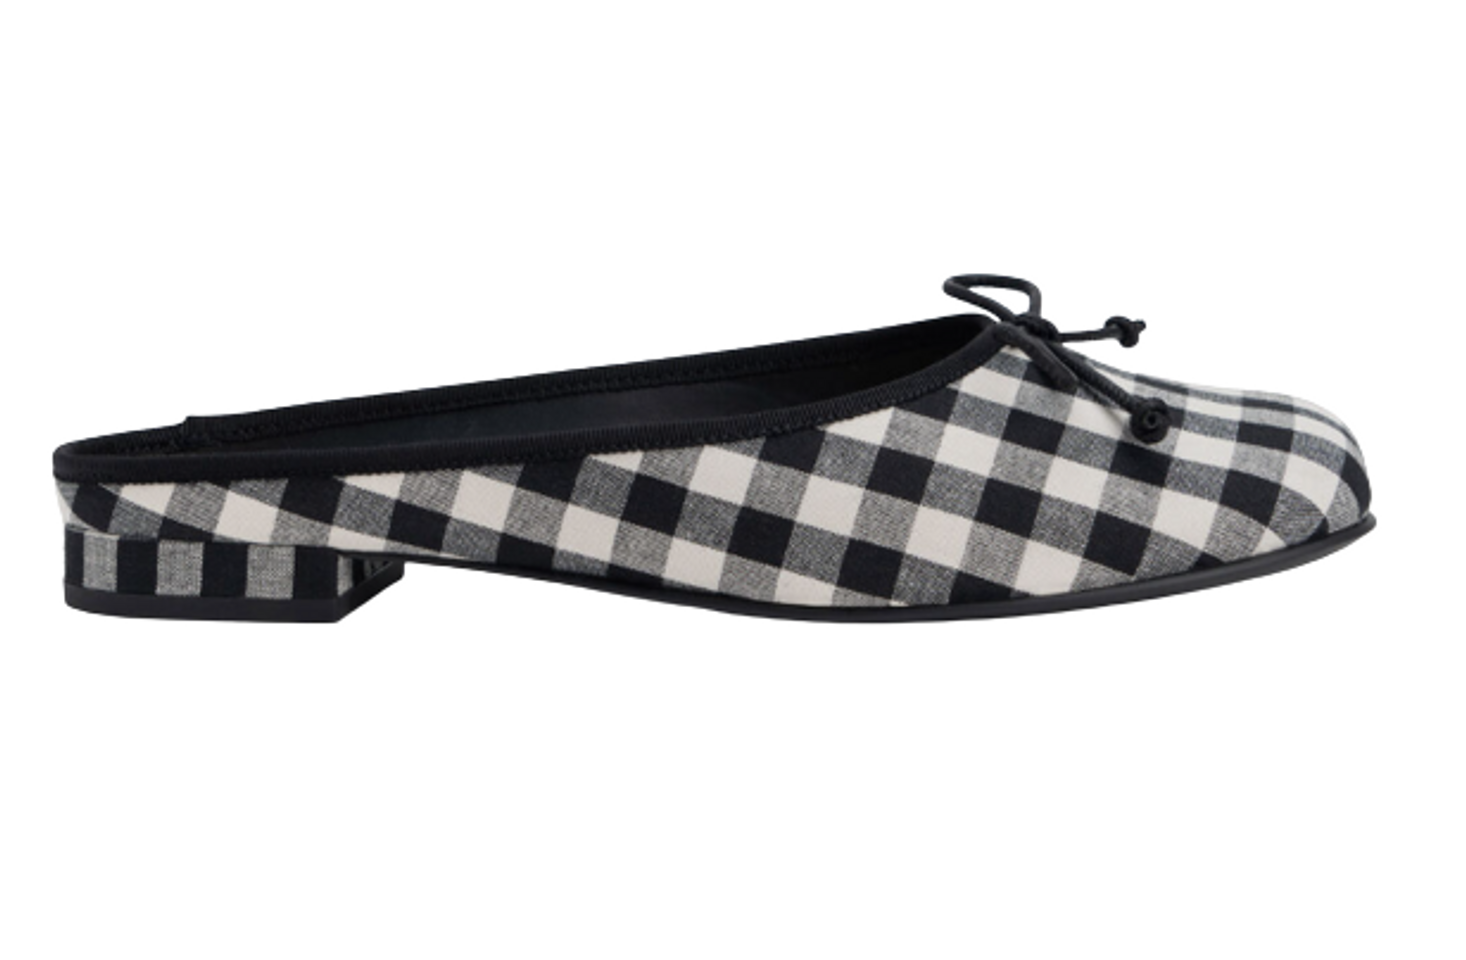 Giày bệt nữ Charles & Keith Bow Checkered Slip-On Flats CK1-70360145 phối màu, 35